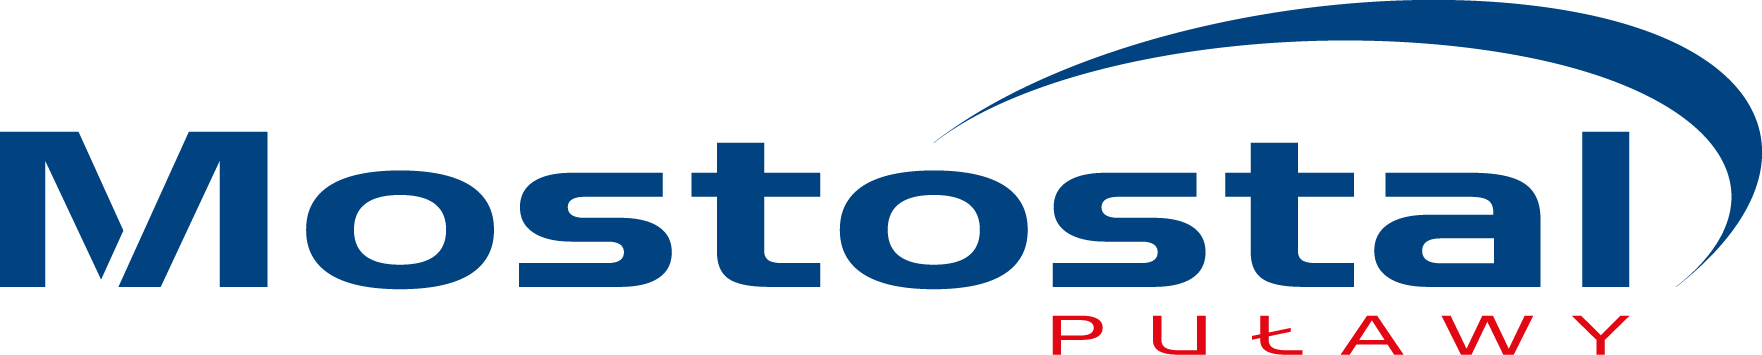 mostostal_-_logo.png